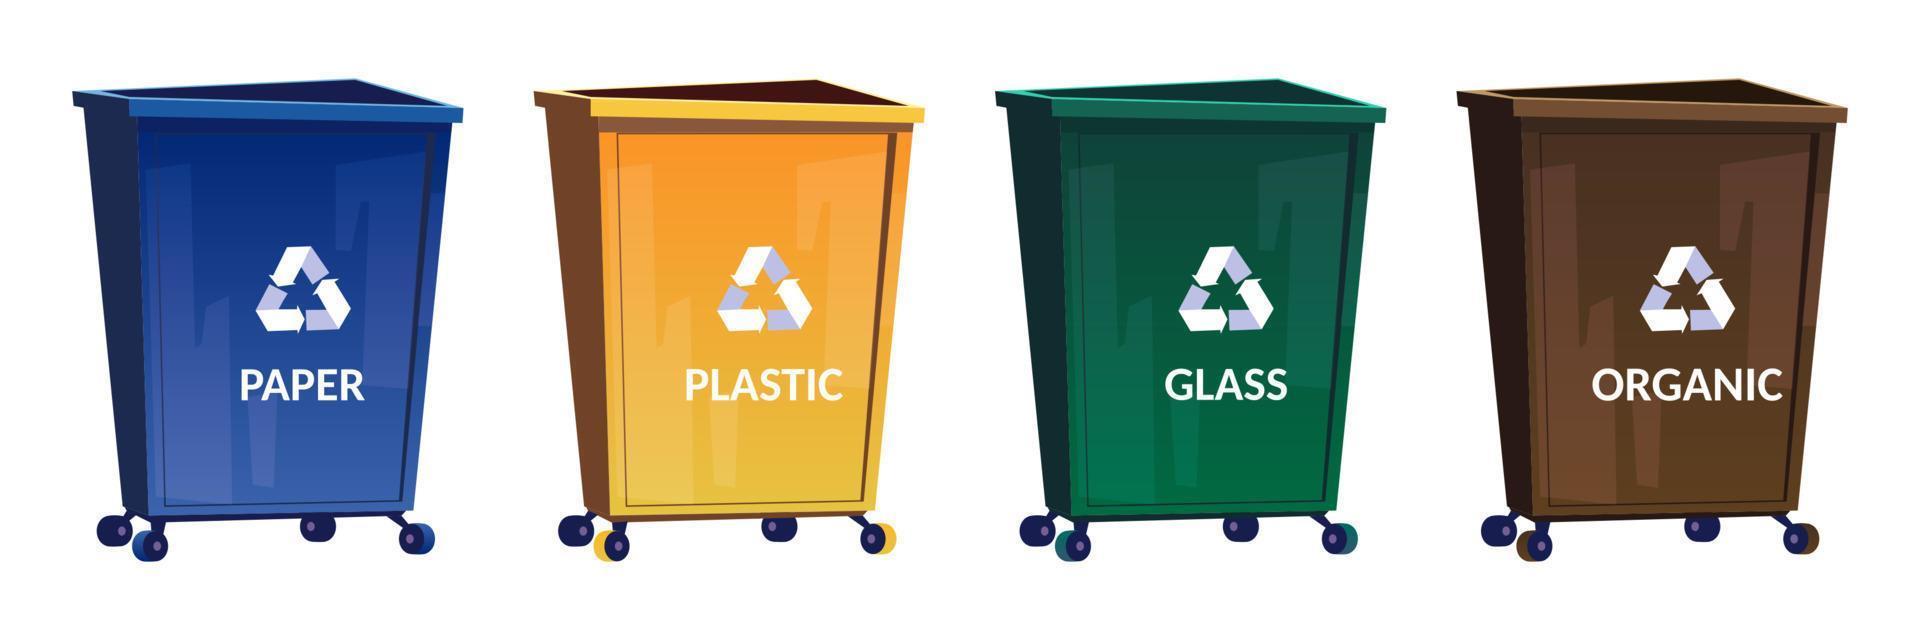 contenedores de basura para separar y reciclar basura vector